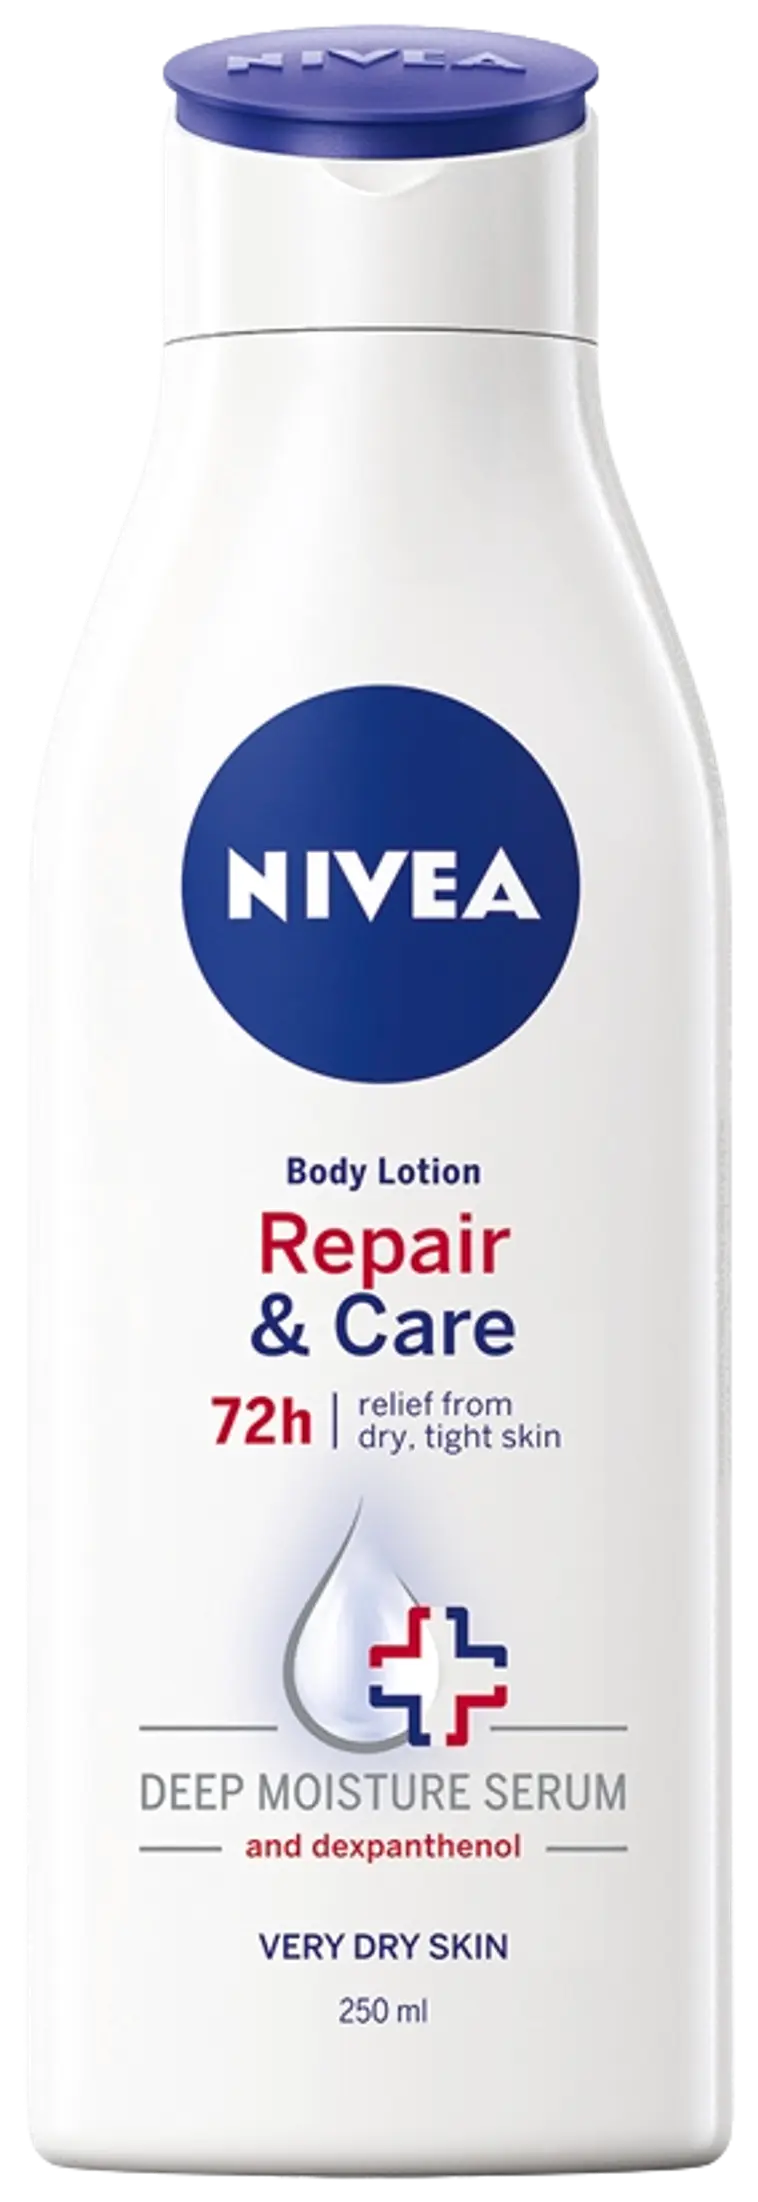 NIVEA 250ml Repair & Care Body Lotion vartaloemulsio erittäin kuivalle iholle